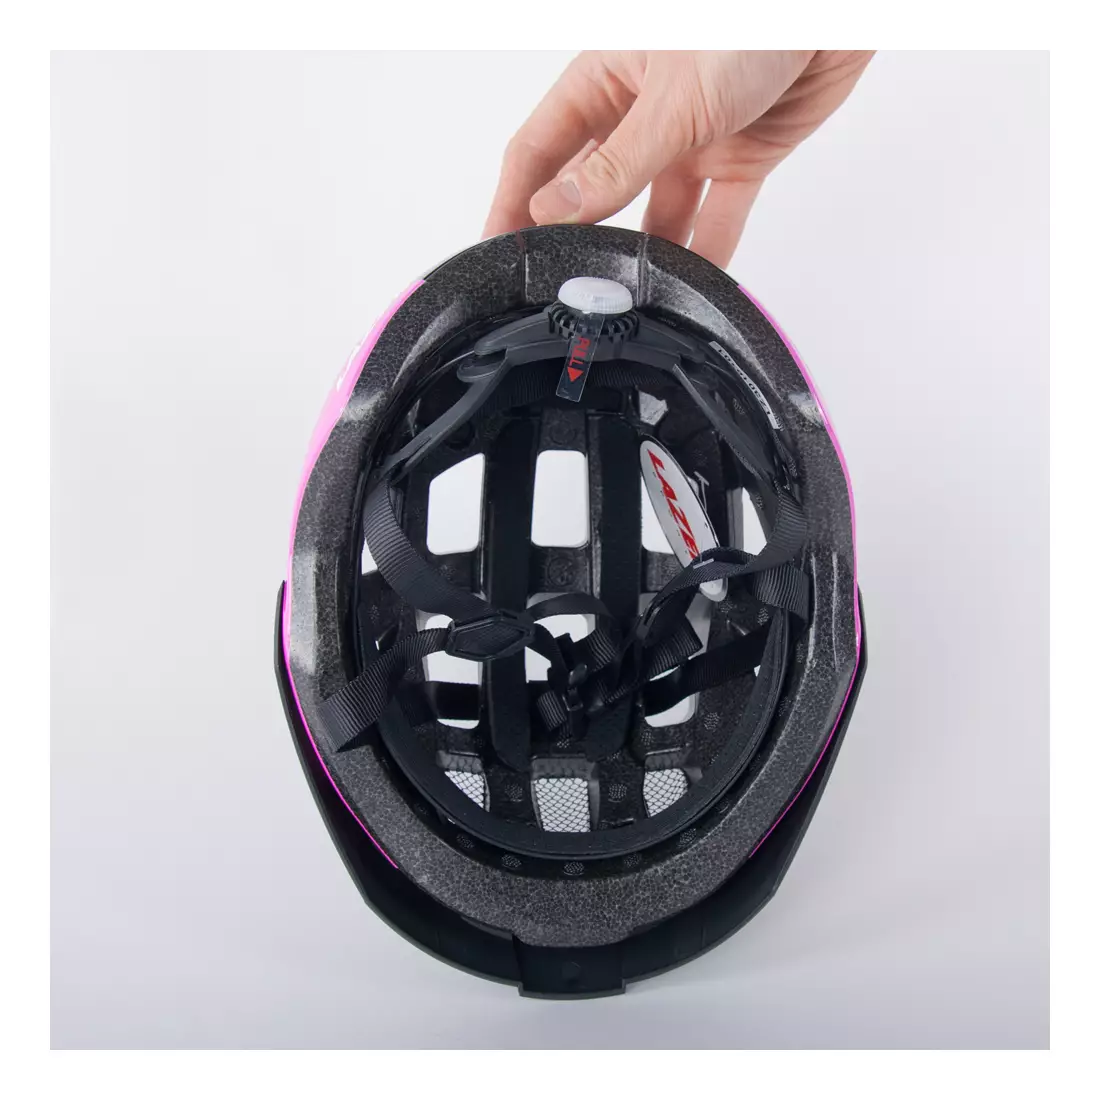 LAZER Damen-Fahrradhelm Petit DLX Mesh + LED Schwarz und Pink